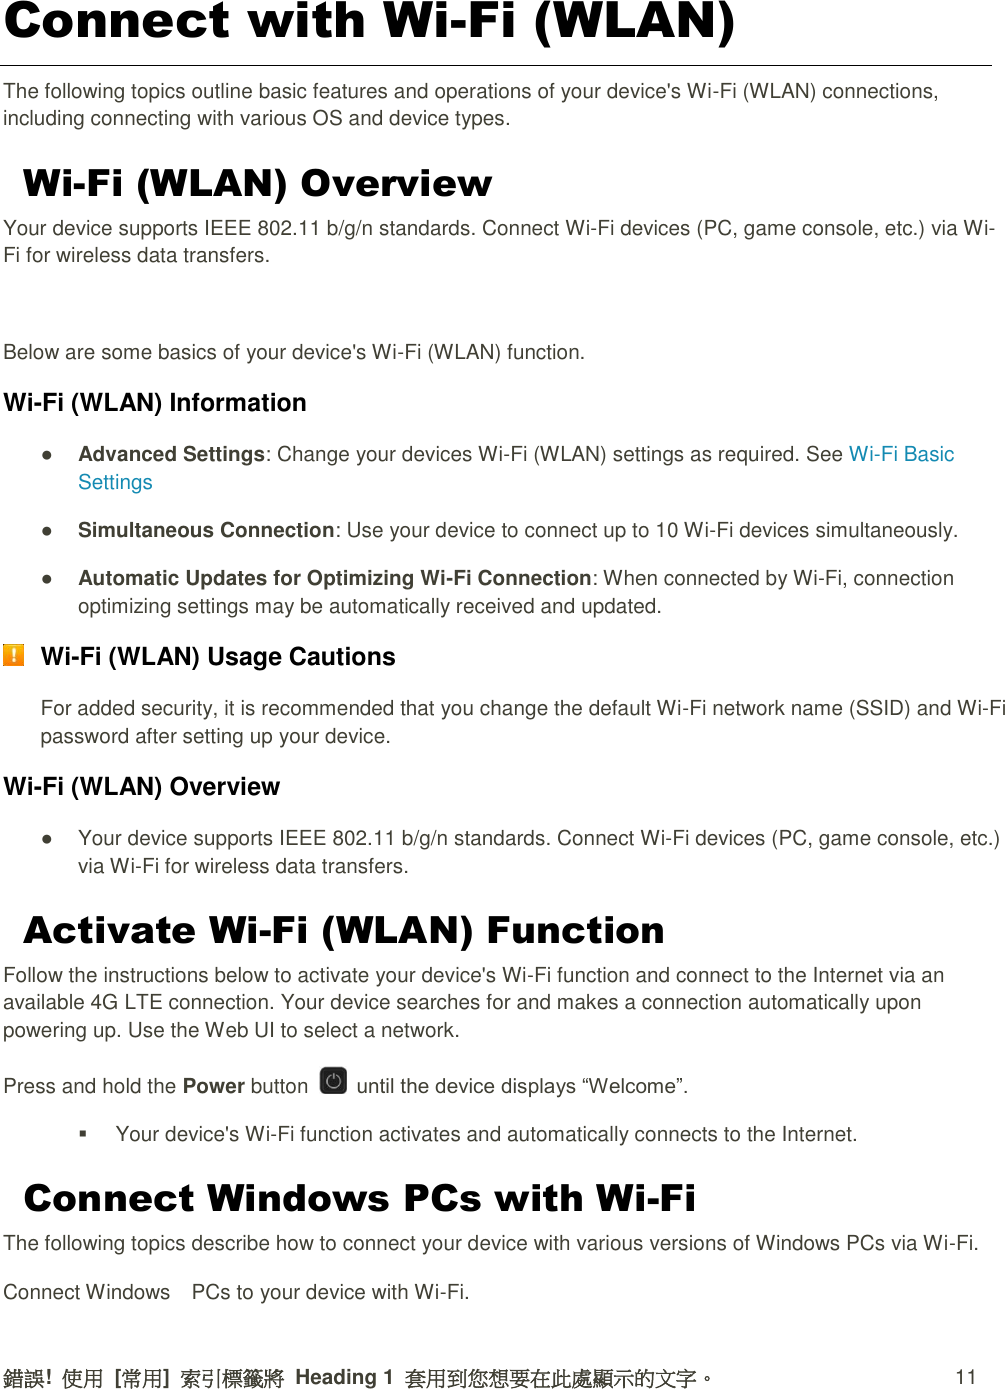 錯誤!  使用  [常用]  索引標籤將  Heading 1  套用到您想要在此處顯示的文字。 11 Connect with Wi-Fi (WLAN) The following topics outline basic features and operations of your device&apos;s Wi-Fi (WLAN) connections, including connecting with various OS and device types. Wi-Fi (WLAN) Overview Your device supports IEEE 802.11 b/g/n standards. Connect Wi-Fi devices (PC, game console, etc.) via Wi-Fi for wireless data transfers.  Below are some basics of your device&apos;s Wi-Fi (WLAN) function. Wi-Fi (WLAN) Information ● Advanced Settings: Change your devices Wi-Fi (WLAN) settings as required. See Wi-Fi Basic Settings ● Simultaneous Connection: Use your device to connect up to 10 Wi-Fi devices simultaneously.   ● Automatic Updates for Optimizing Wi-Fi Connection: When connected by Wi-Fi, connection optimizing settings may be automatically received and updated.  Wi-Fi (WLAN) Usage Cautions For added security, it is recommended that you change the default Wi-Fi network name (SSID) and Wi-Fi password after setting up your device. Wi-Fi (WLAN) Overview   ●  Your device supports IEEE 802.11 b/g/n standards. Connect Wi-Fi devices (PC, game console, etc.) via Wi-Fi for wireless data transfers. Activate Wi-Fi (WLAN) Function Follow the instructions below to activate your device&apos;s Wi-Fi function and connect to the Internet via an available 4G LTE connection. Your device searches for and makes a connection automatically upon powering up. Use the Web UI to select a network. Press and hold the Power button    until the device displays “Welcome”.   Your device&apos;s Wi-Fi function activates and automatically connects to the Internet. Connect Windows PCs with Wi-Fi The following topics describe how to connect your device with various versions of Windows PCs via Wi-Fi. Connect Windows    PCs to your device with Wi-Fi. 